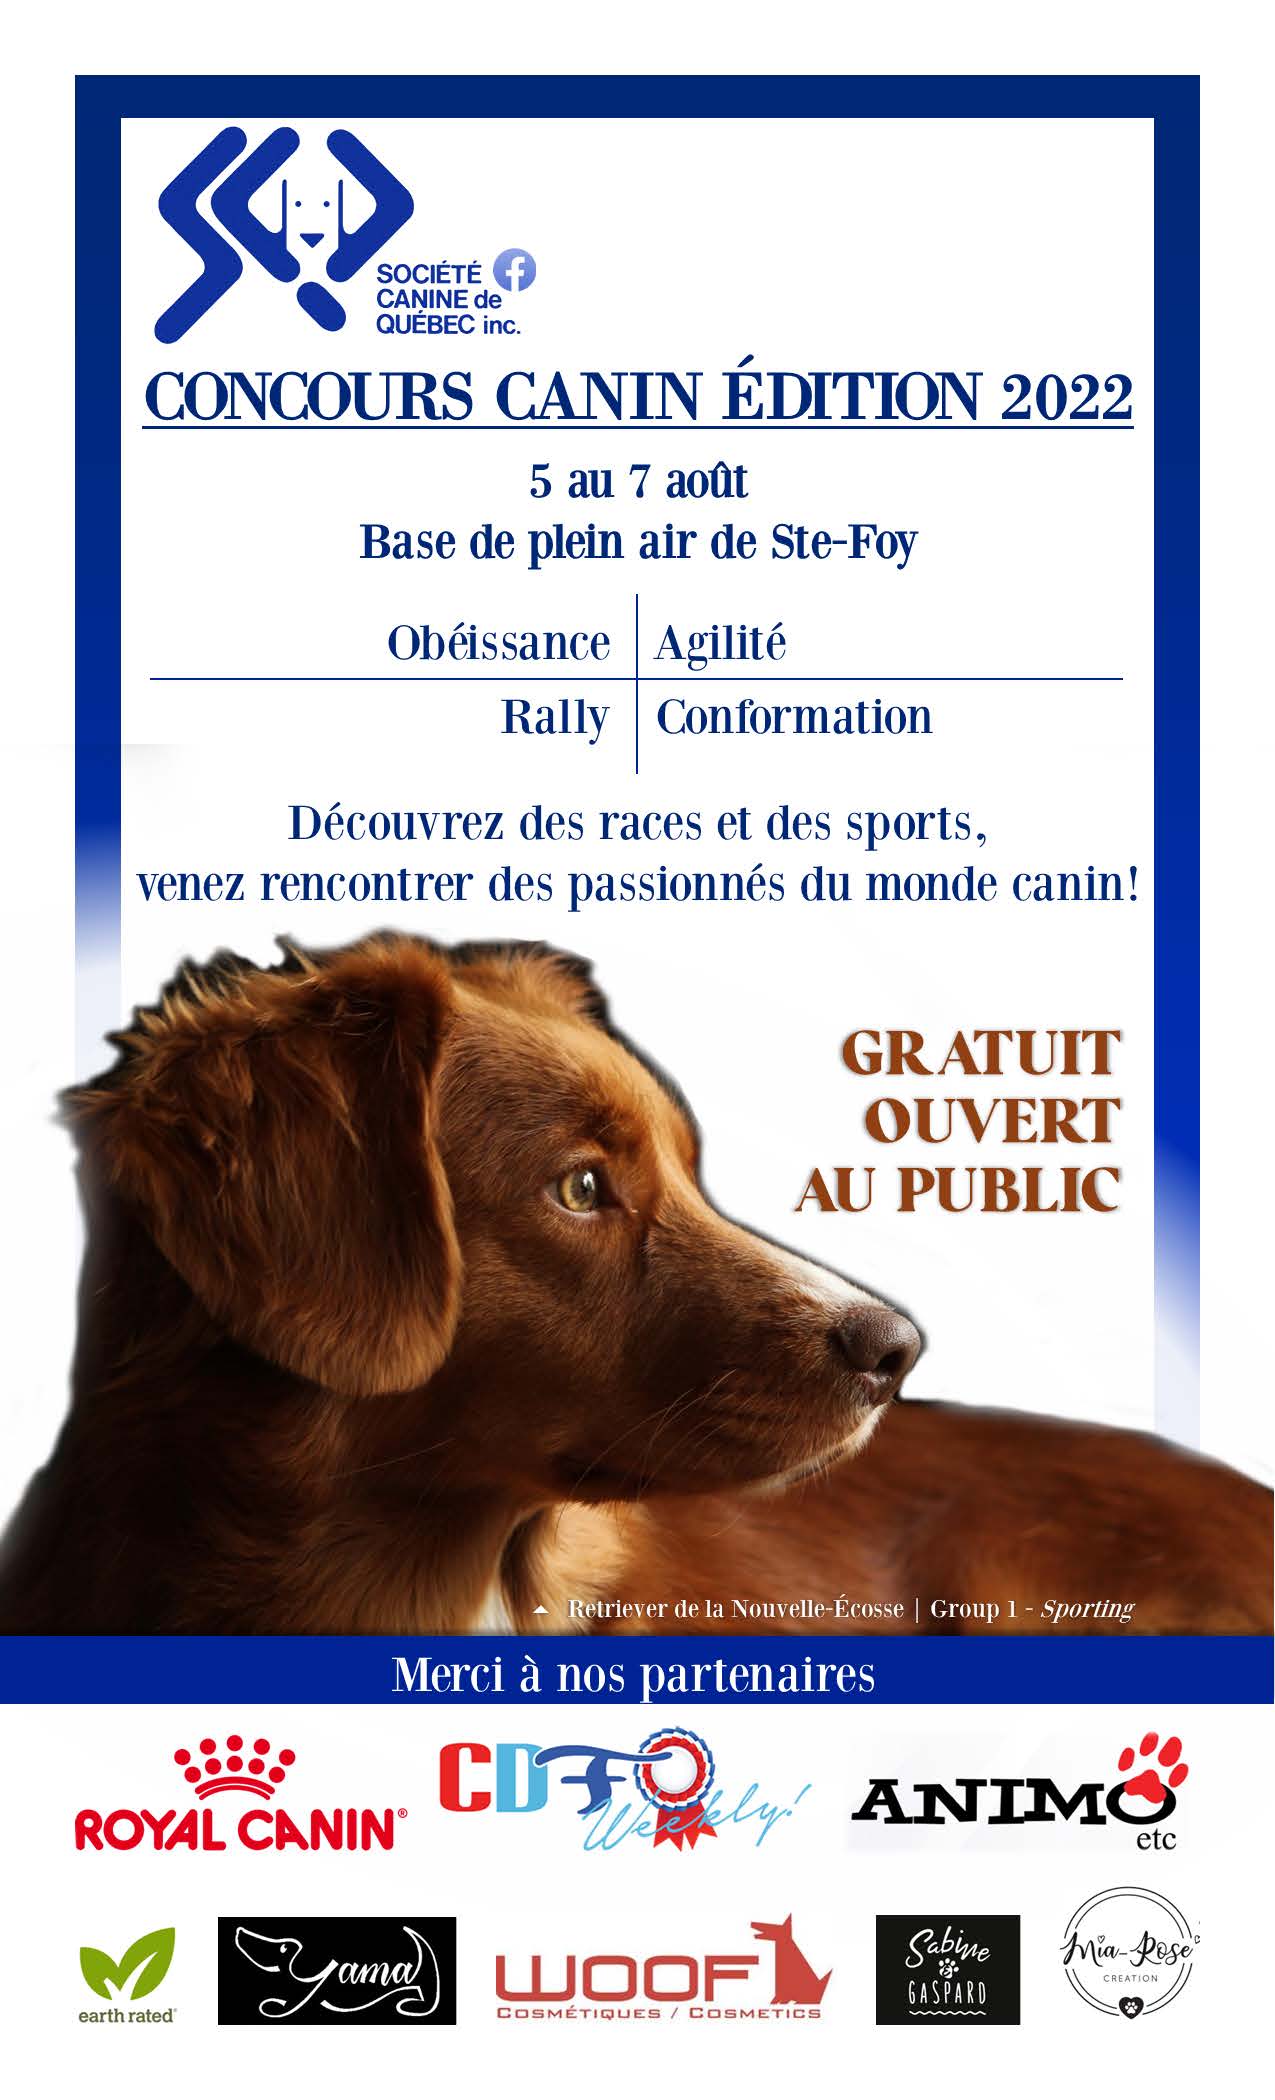 Concours Canin de la Société Canine de Québec